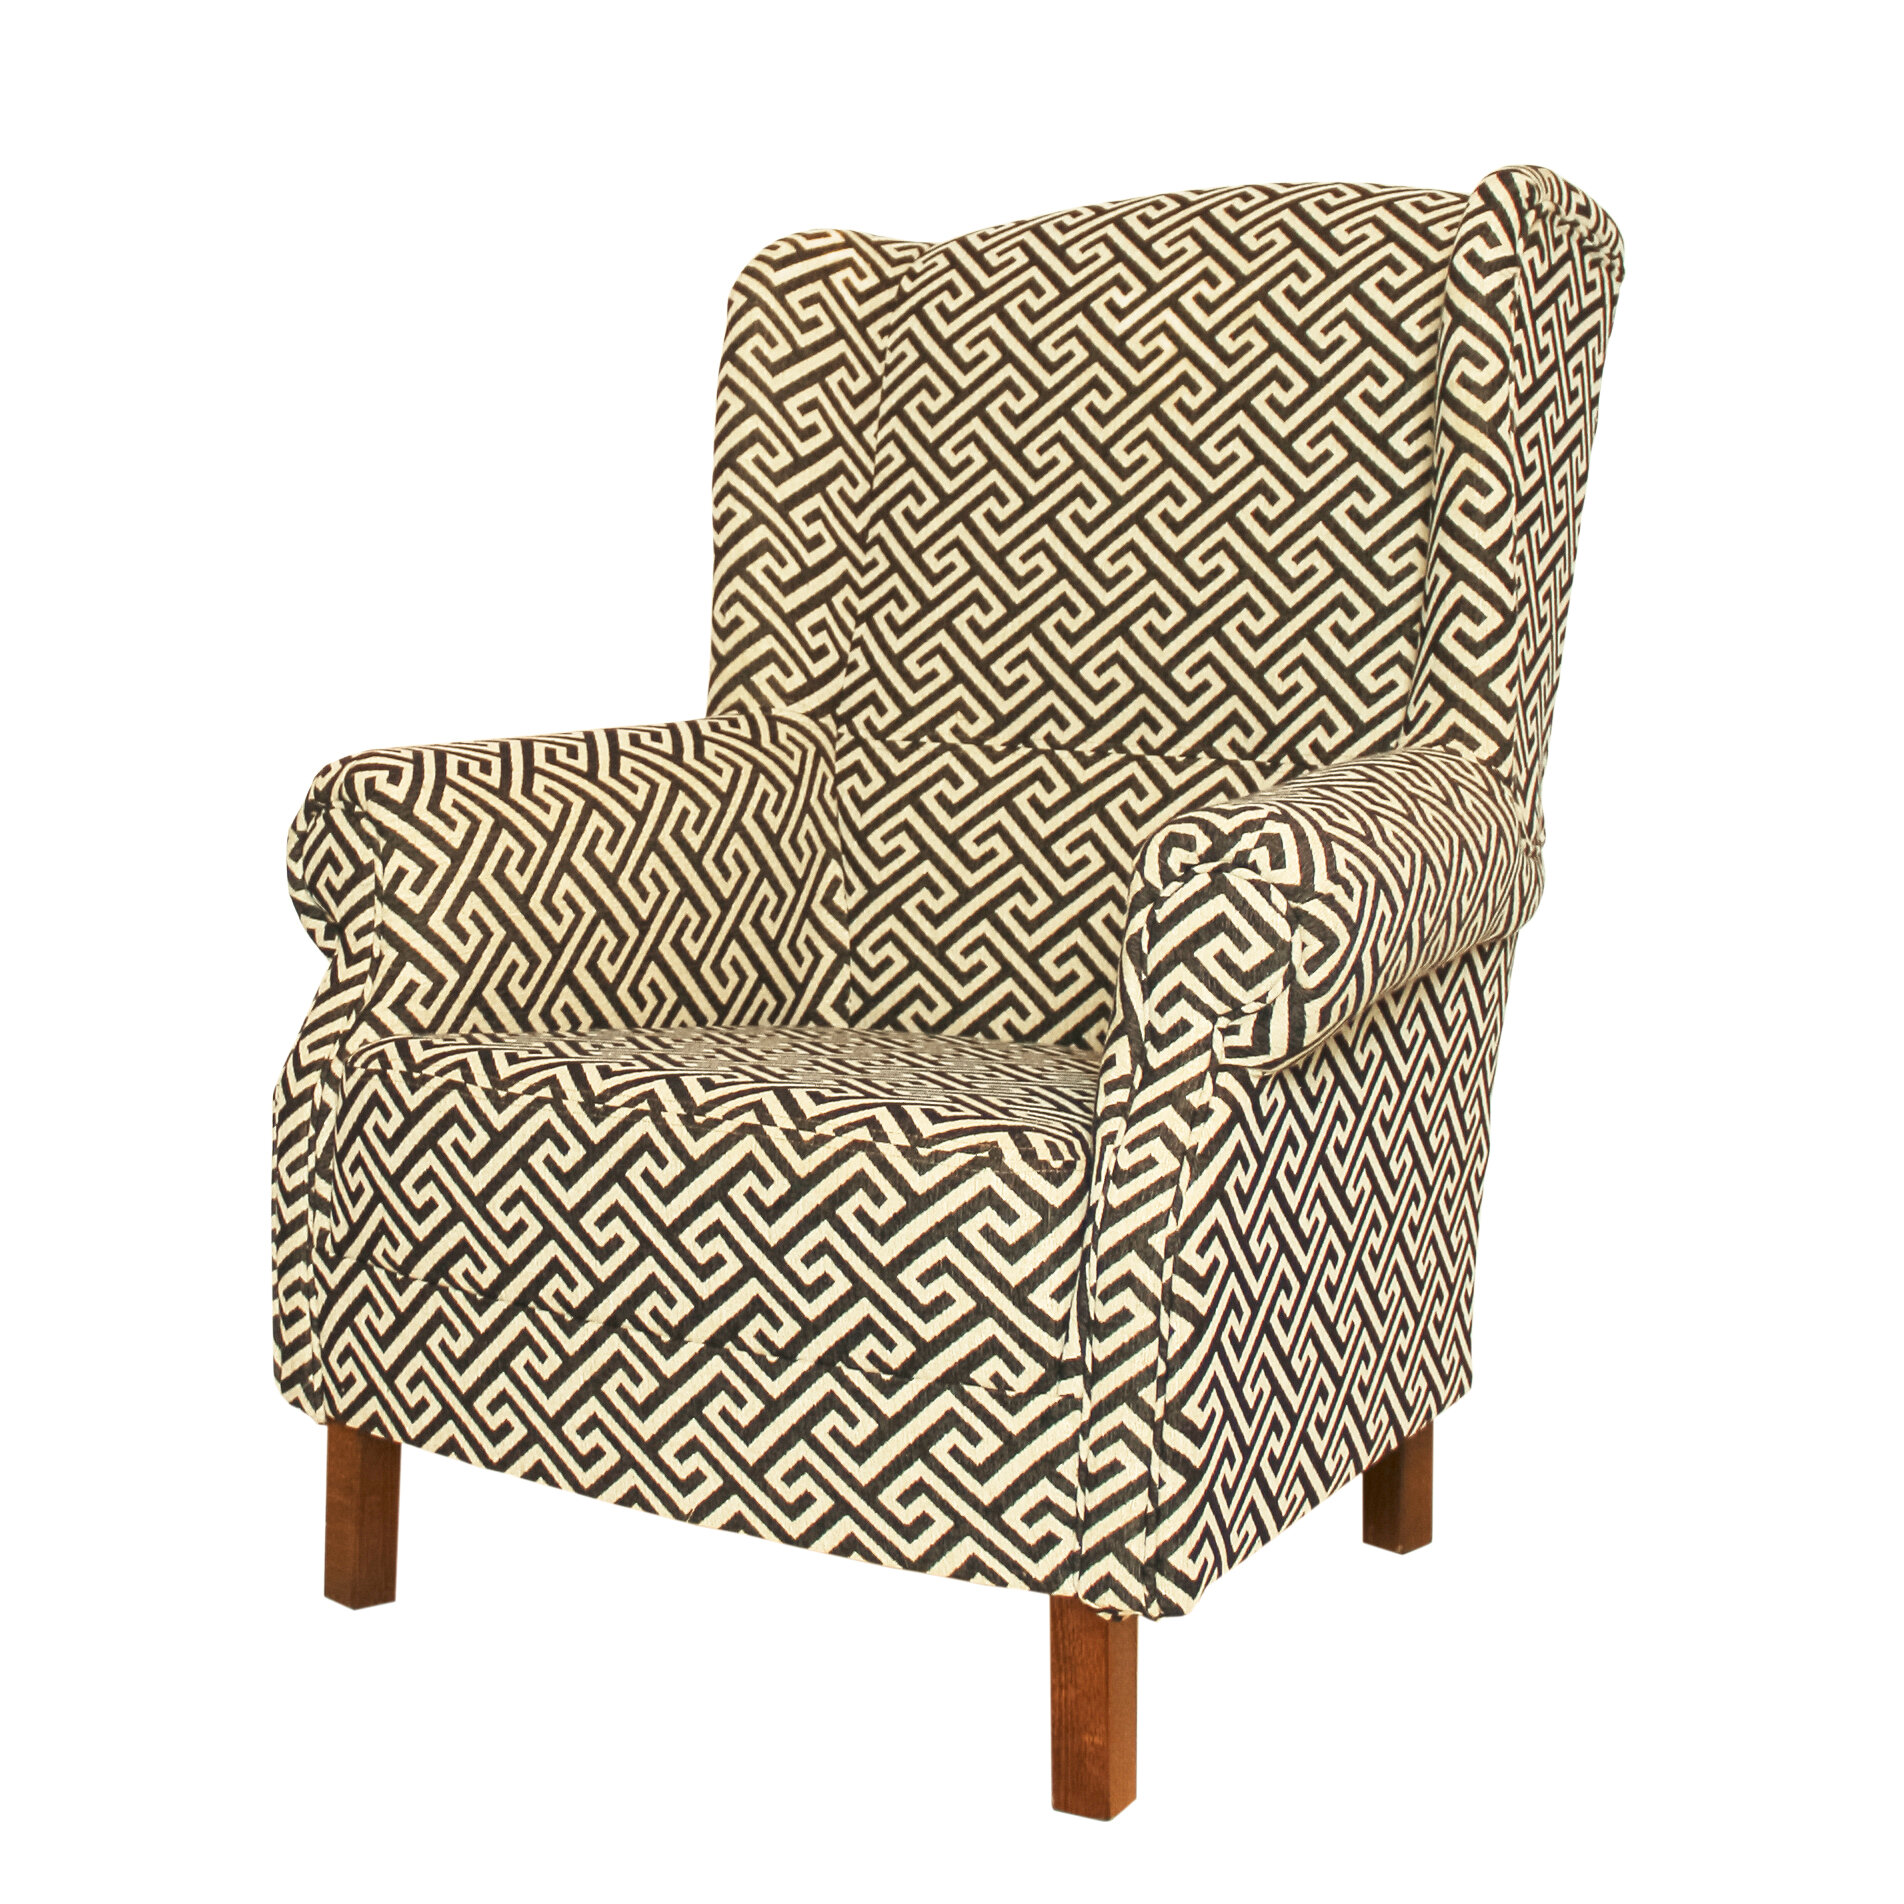 Кресло Ля Нэж Квест Черный, геометрический дизайн, хлопковый гобелен, 84х82х102 см.